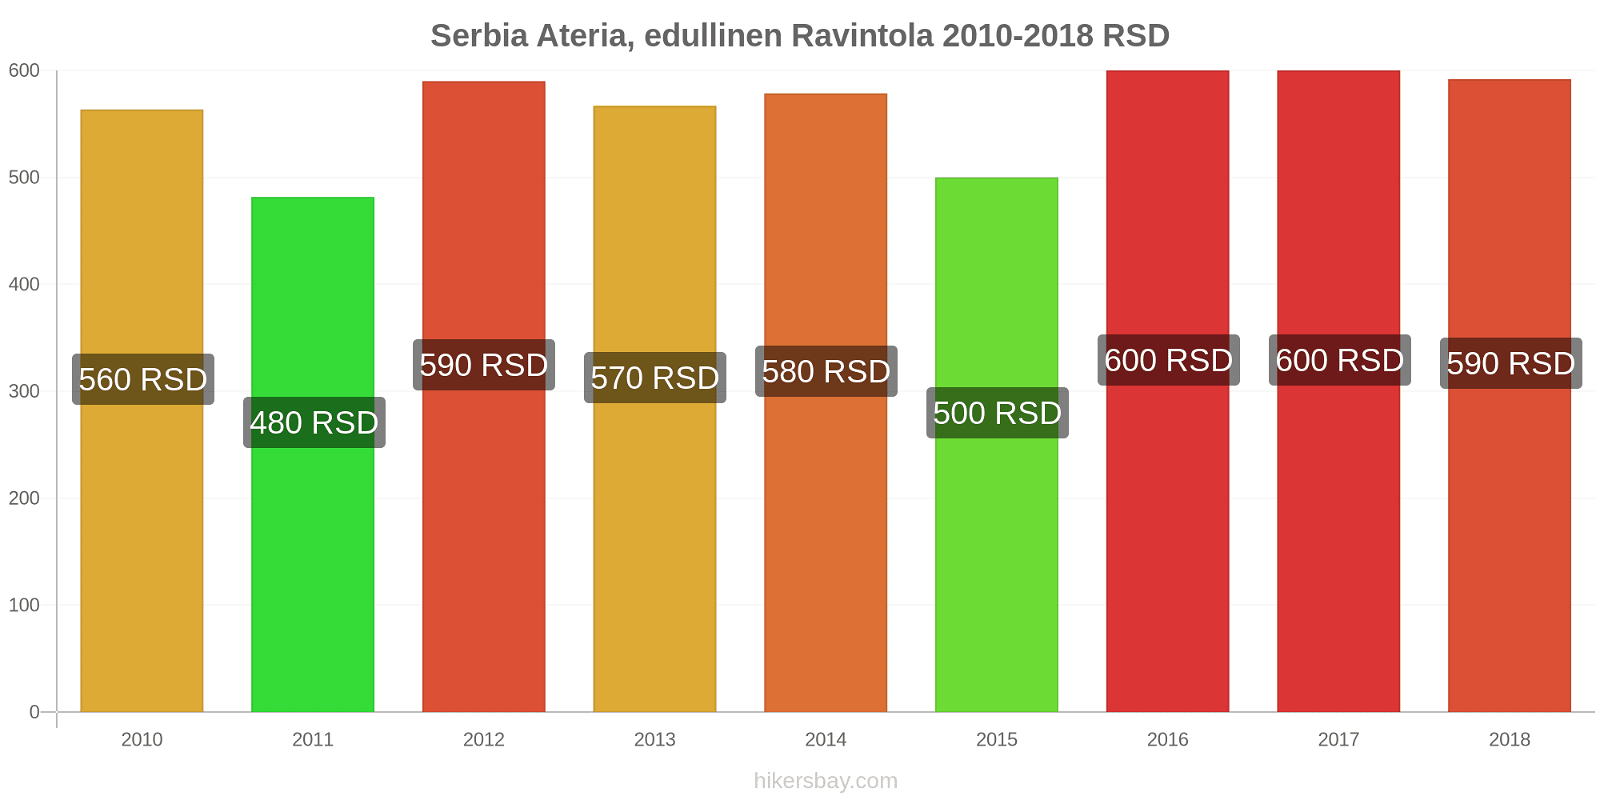 Serbia hintojen muutokset Ateria, edullinen Ravintola hikersbay.com